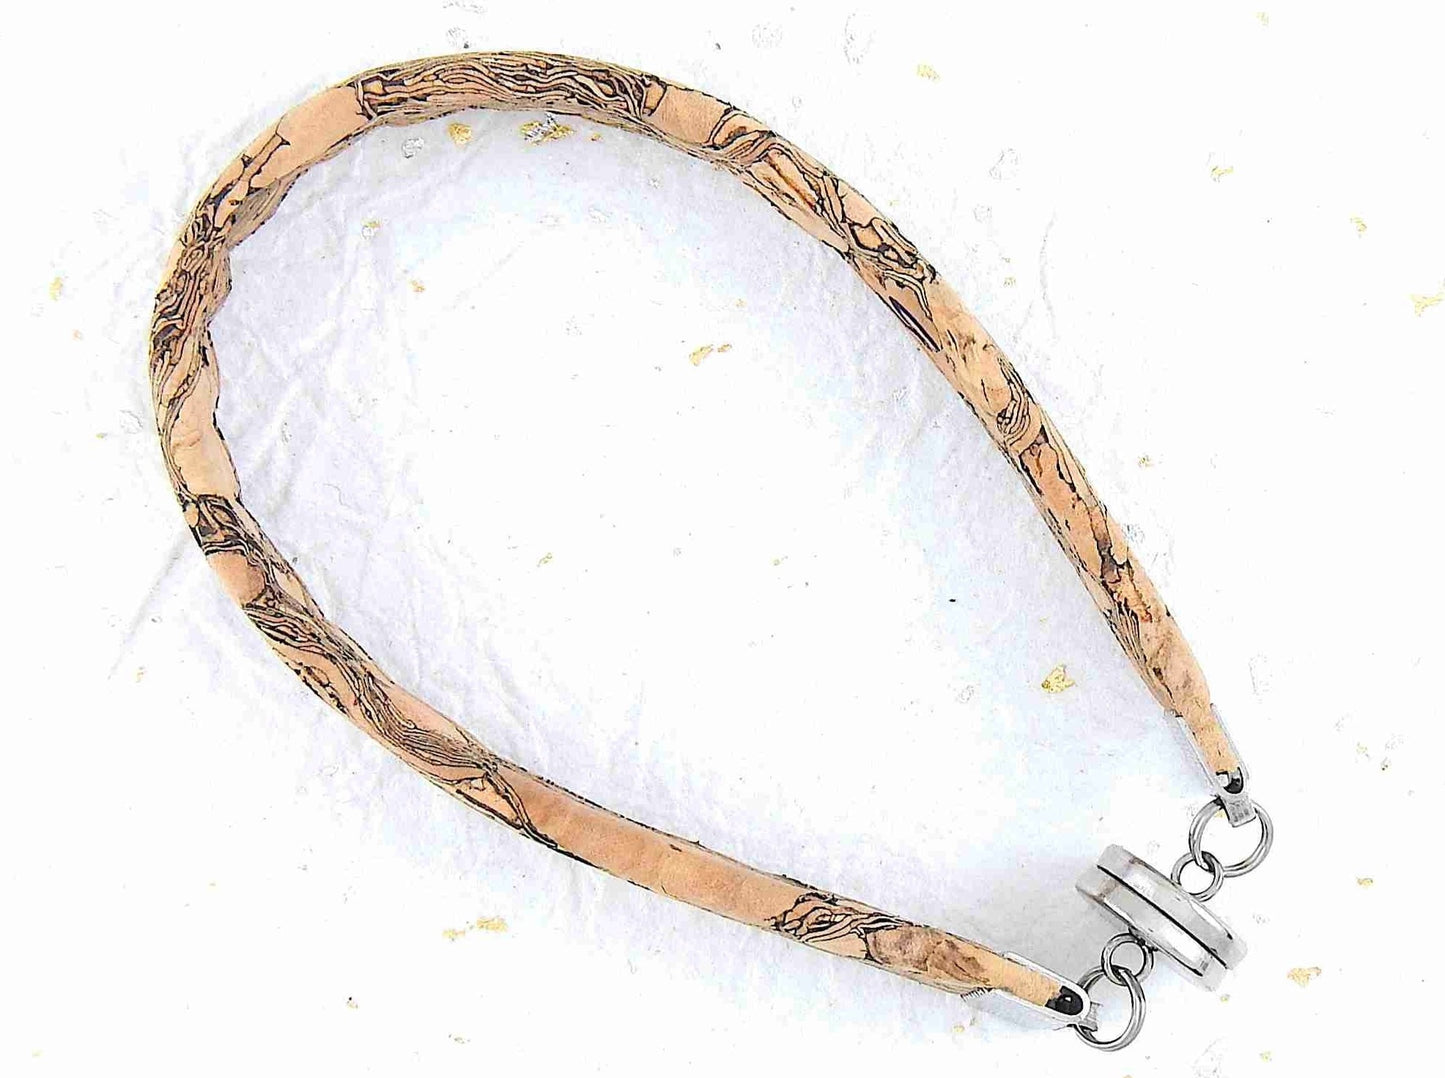 Bracelet simple 10mm en liège offert en 2 motifs (tuiles colorées sur fond beige, marbré gris-beige), fermoir magnétique acier inoxydable